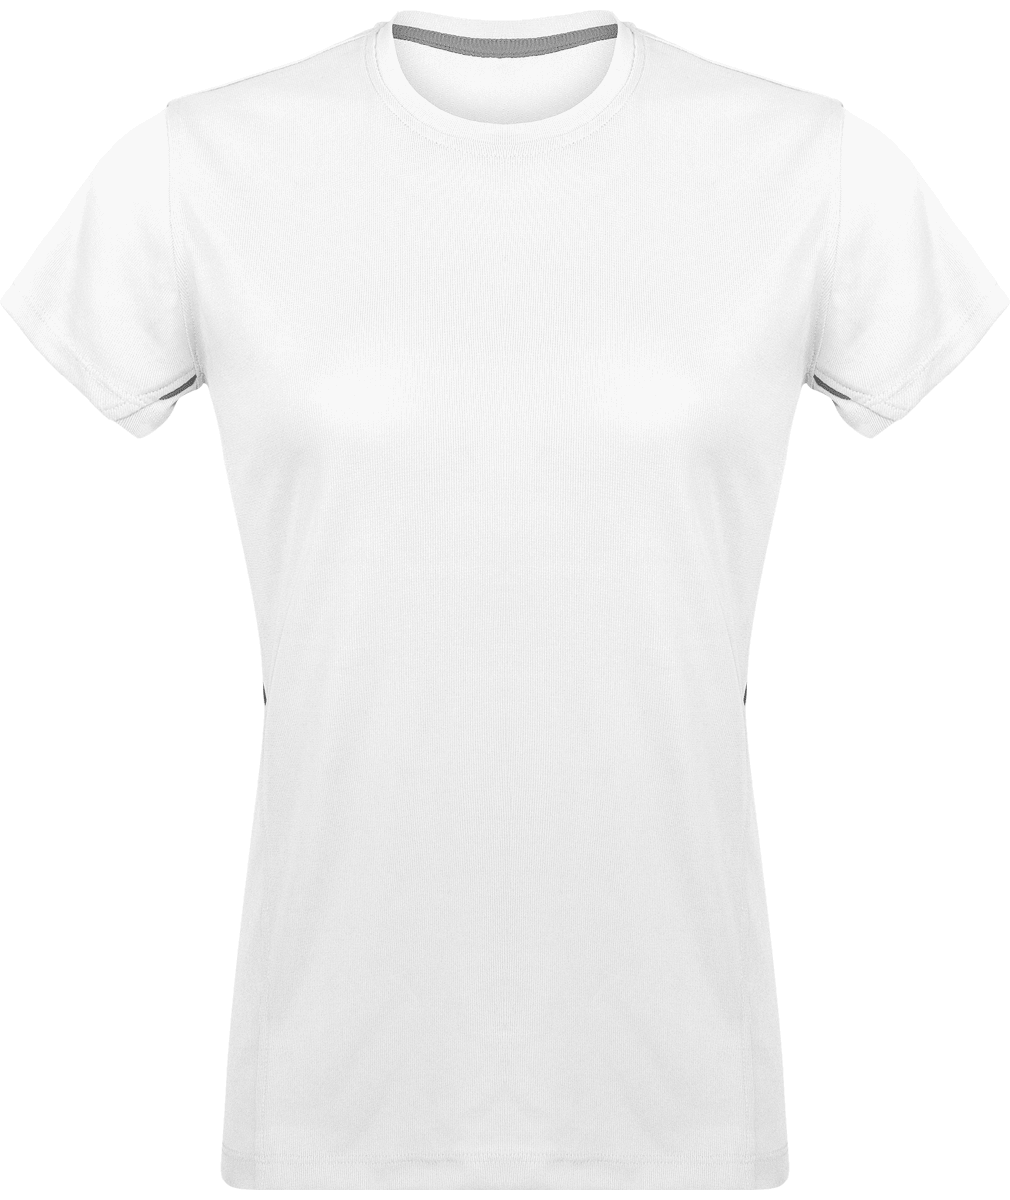 Camiseta Deporte Mujer | Ligera Y Transpirable | White / Silver